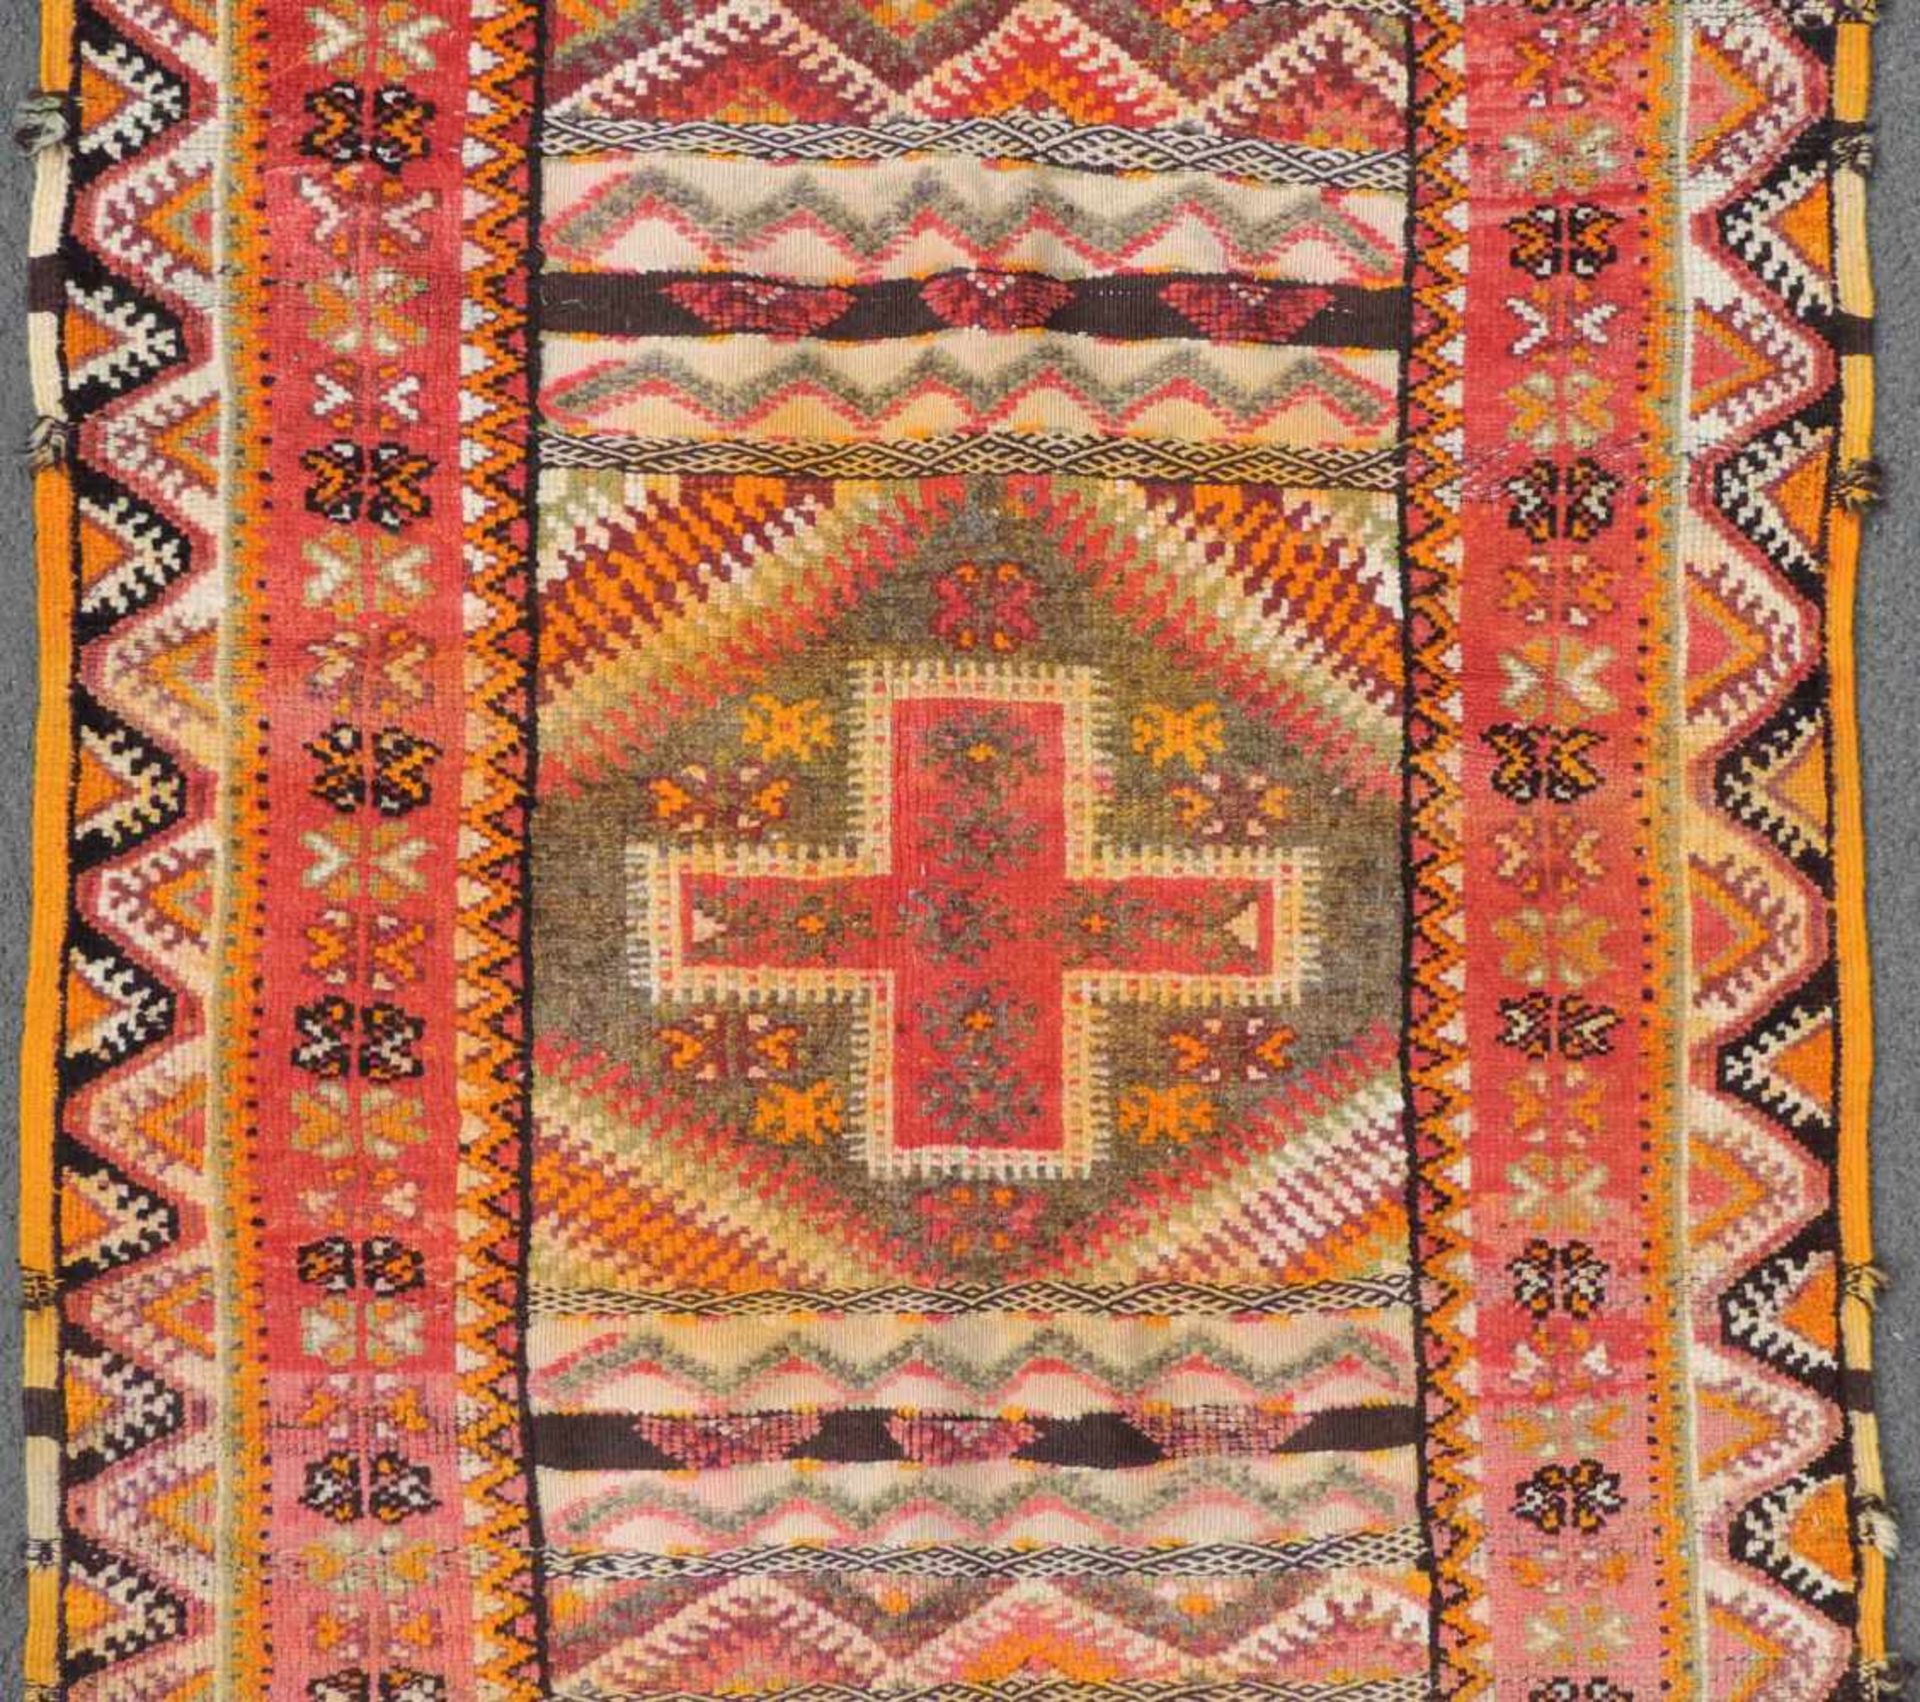 Atlas Teppich. Marokko. Alt, Mitte 20. Jahrhundert. 185 cm x 103 cm. Handgeknüpft und handgewebt. - Bild 3 aus 8